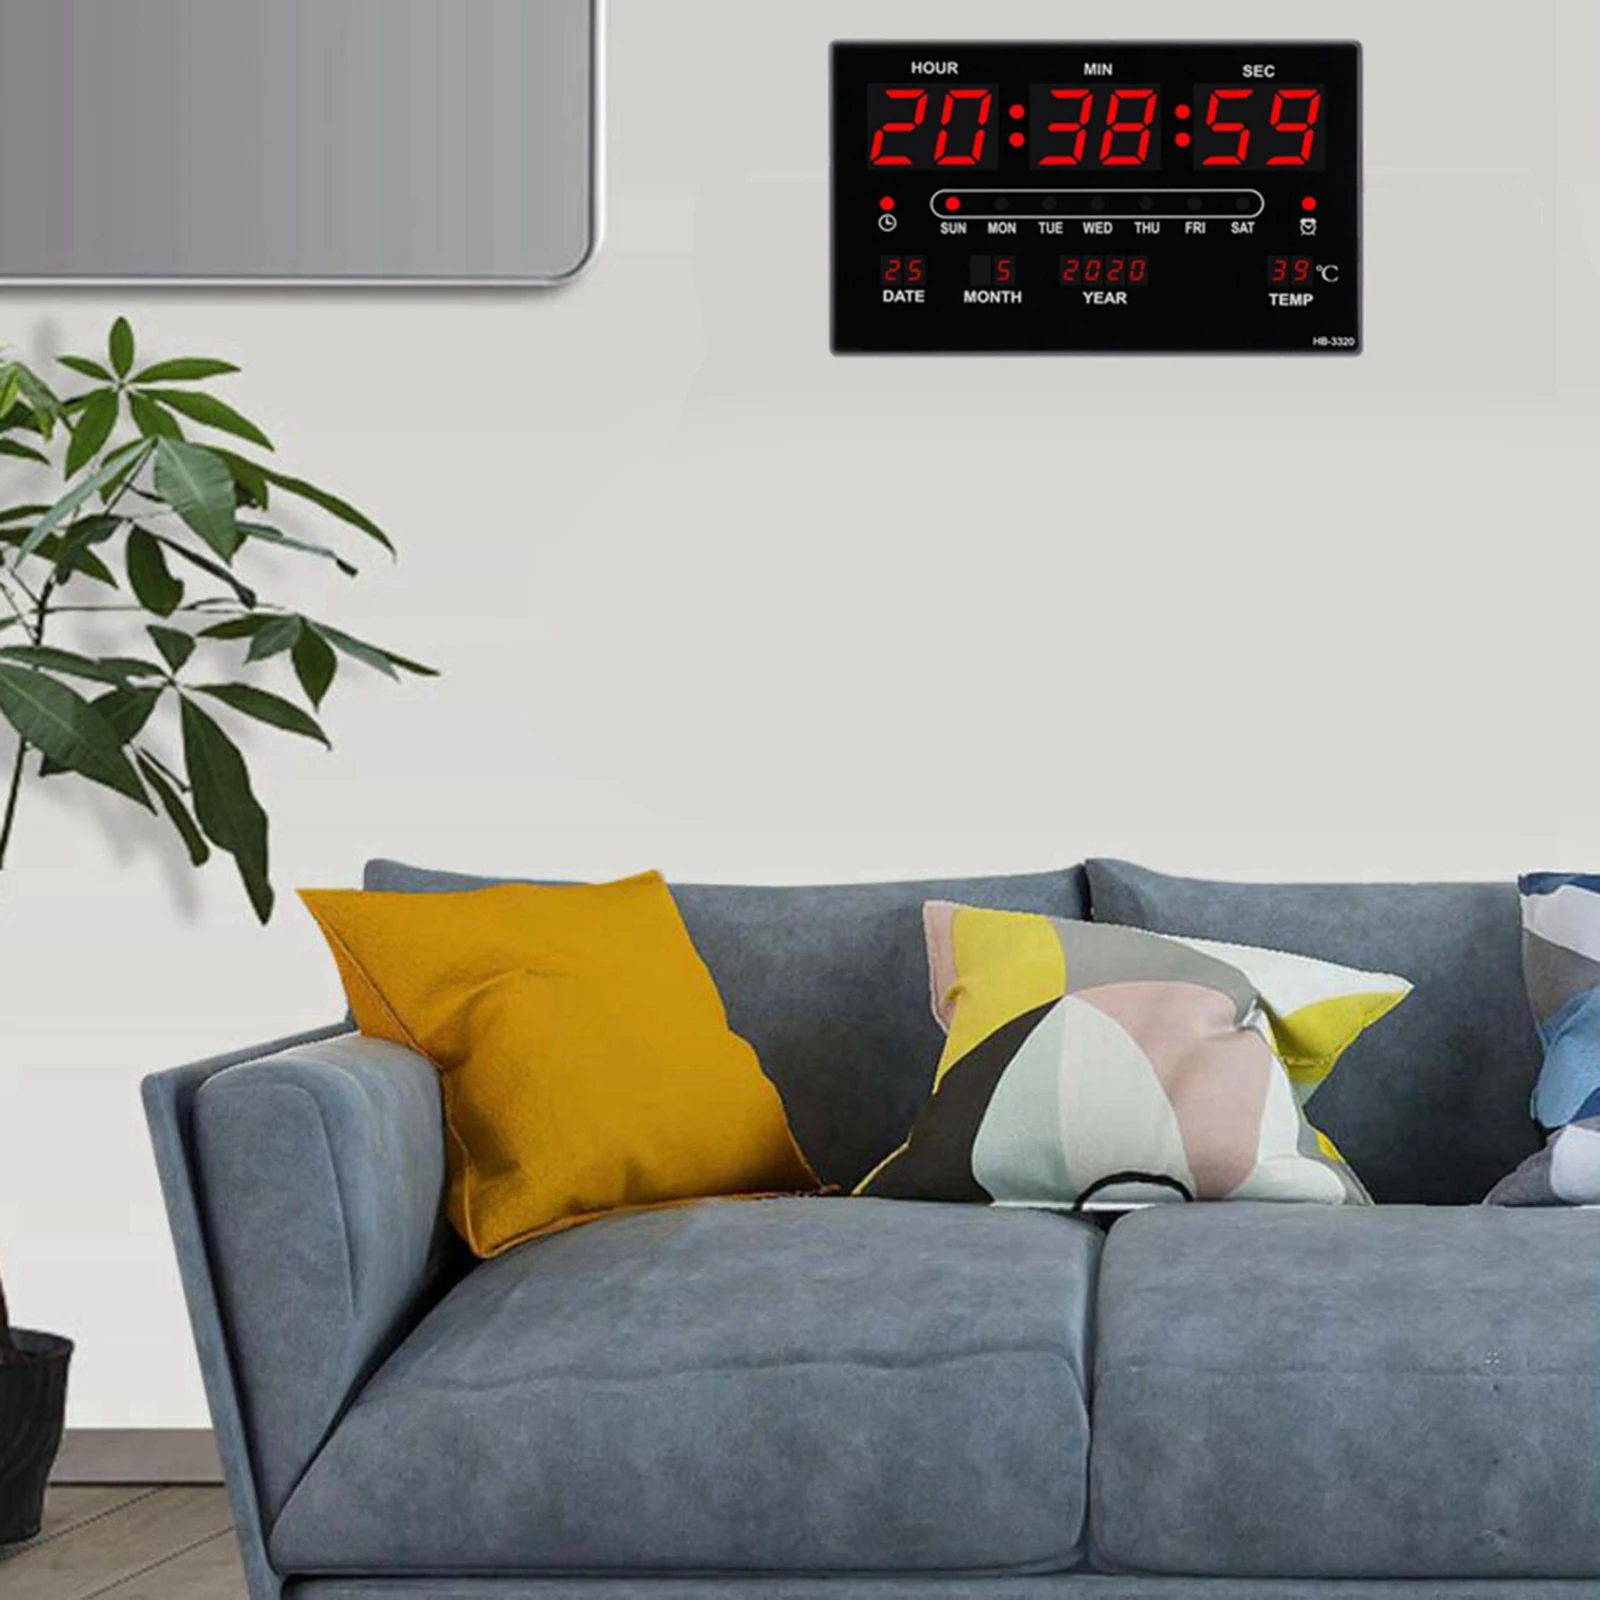 unique wall clocks Digital LED Wall Desk Alarm Clock LED Wall Clock with Calendar Temperature 12H 24H Display industrial wall clock